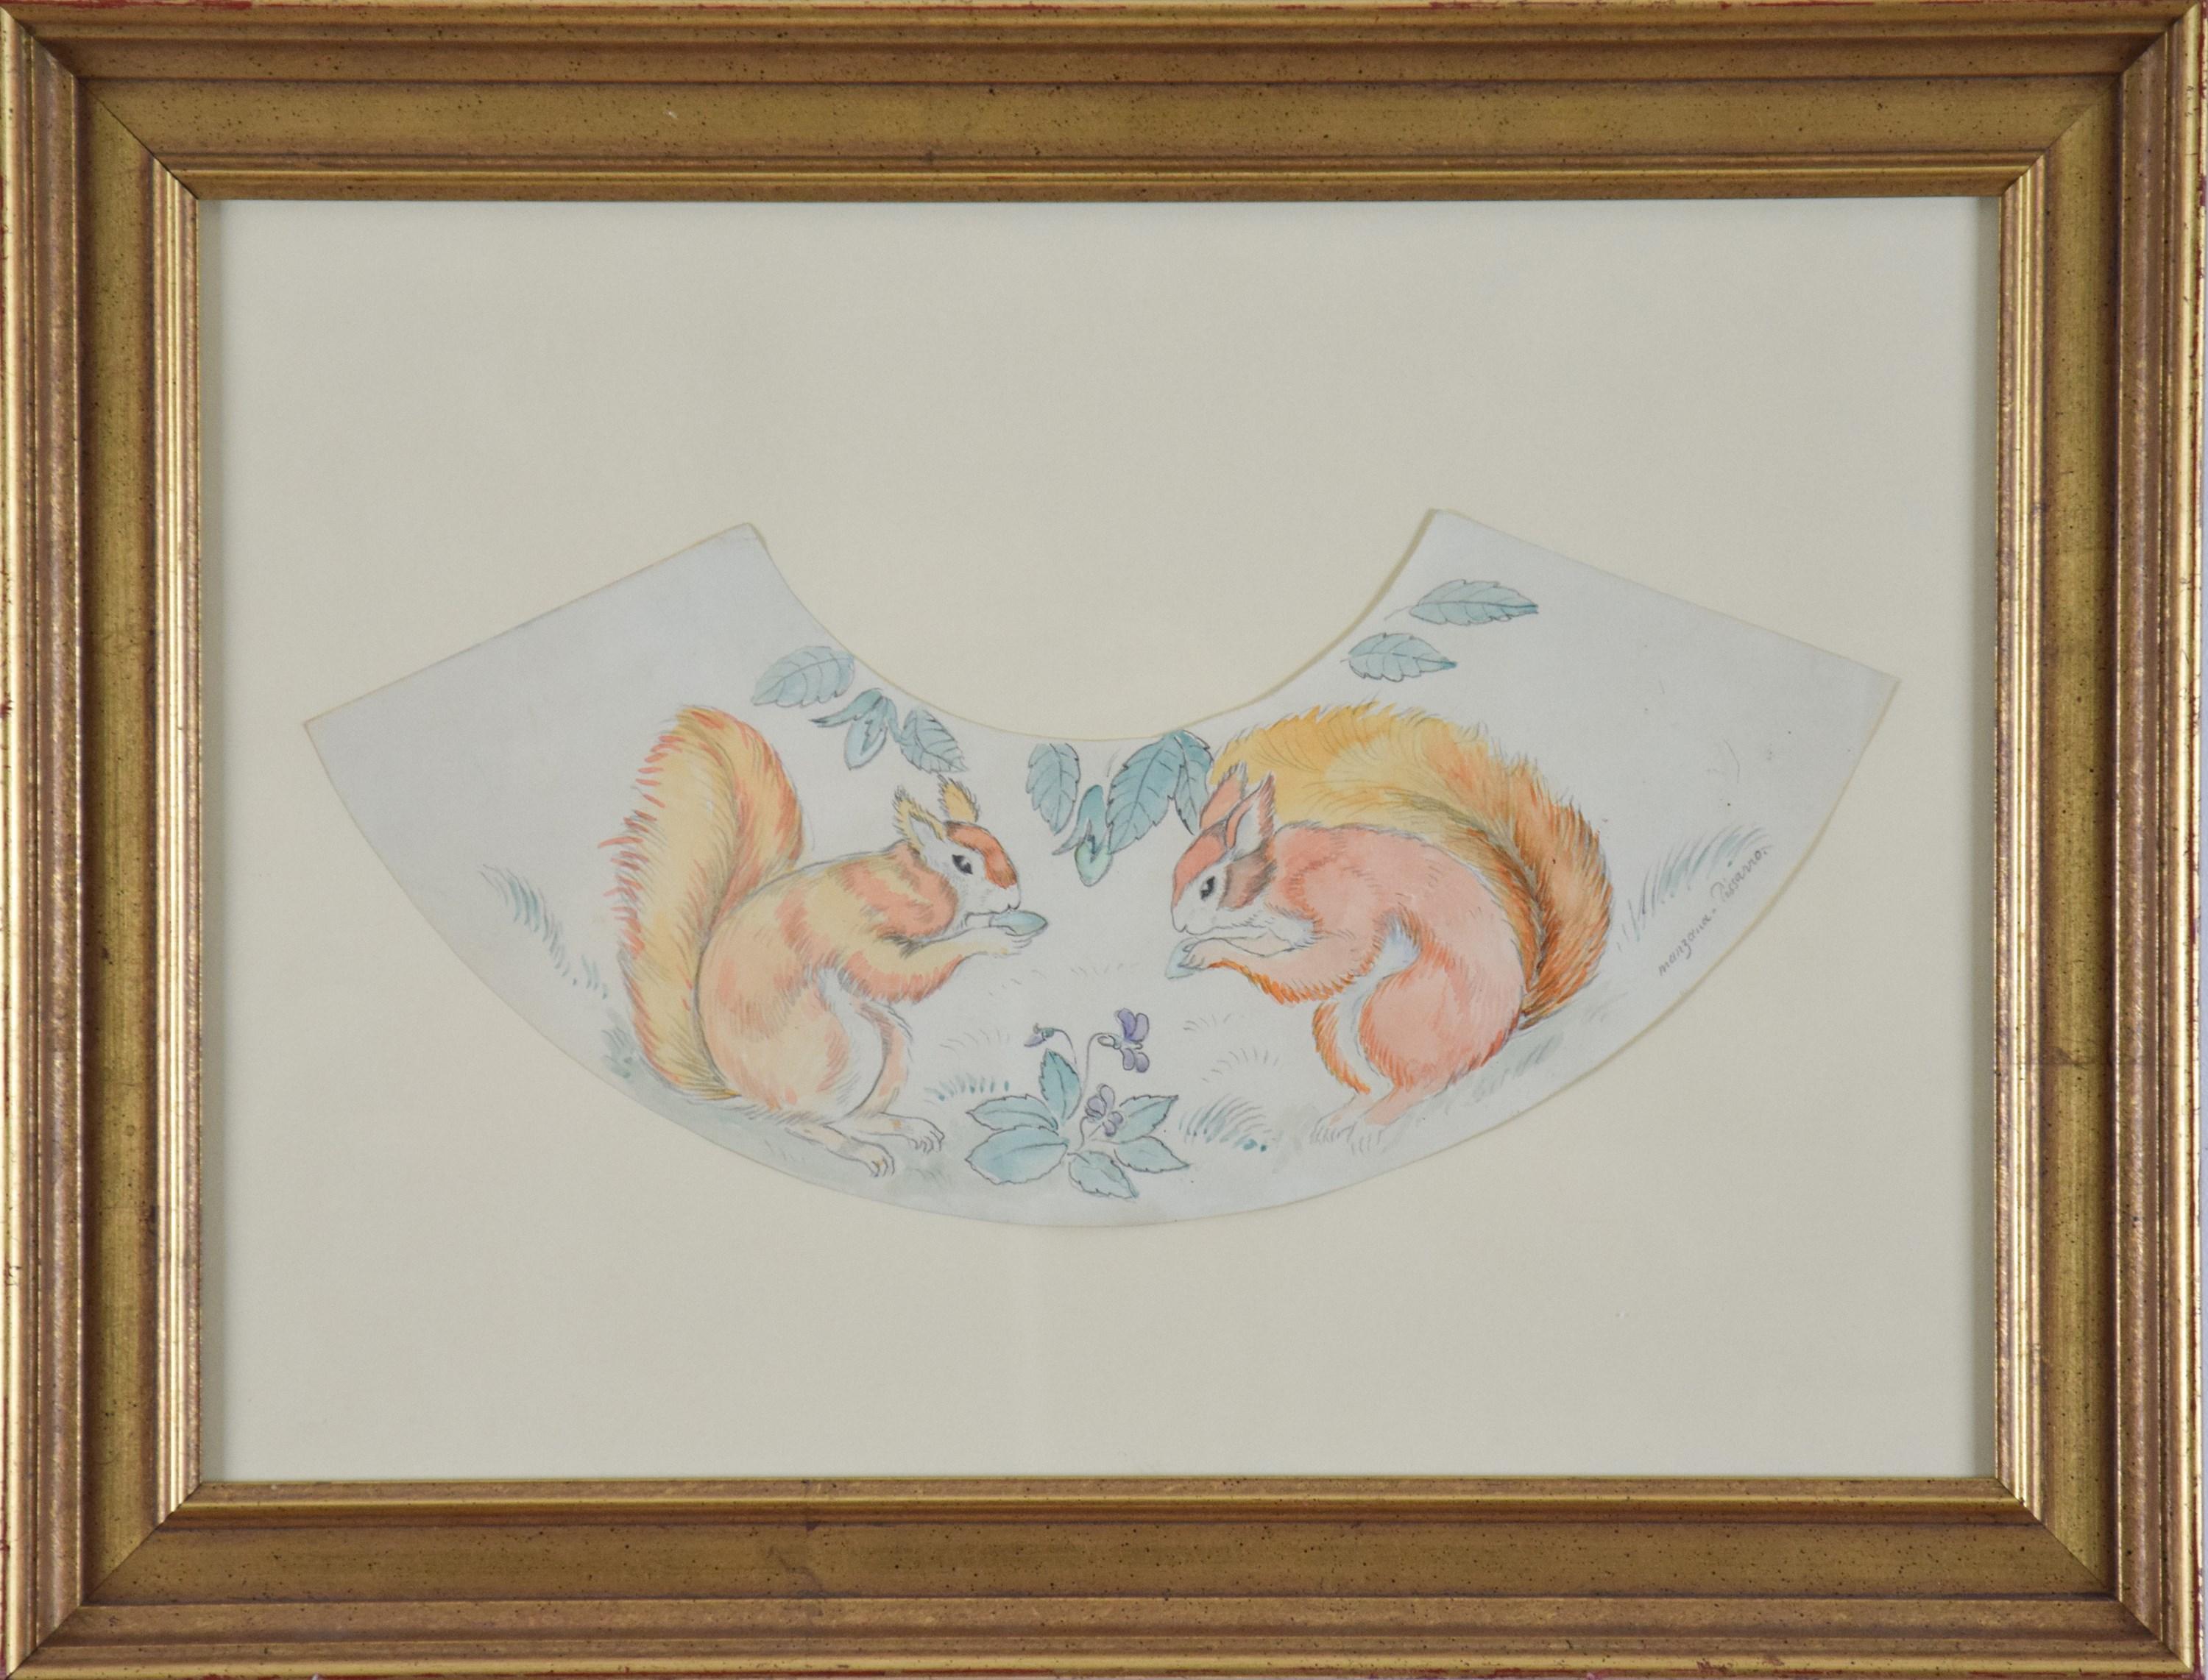 Decorative Squirrel Design, Pencil and Watercolour on Paper - Art by Georges Manzana Pissarro